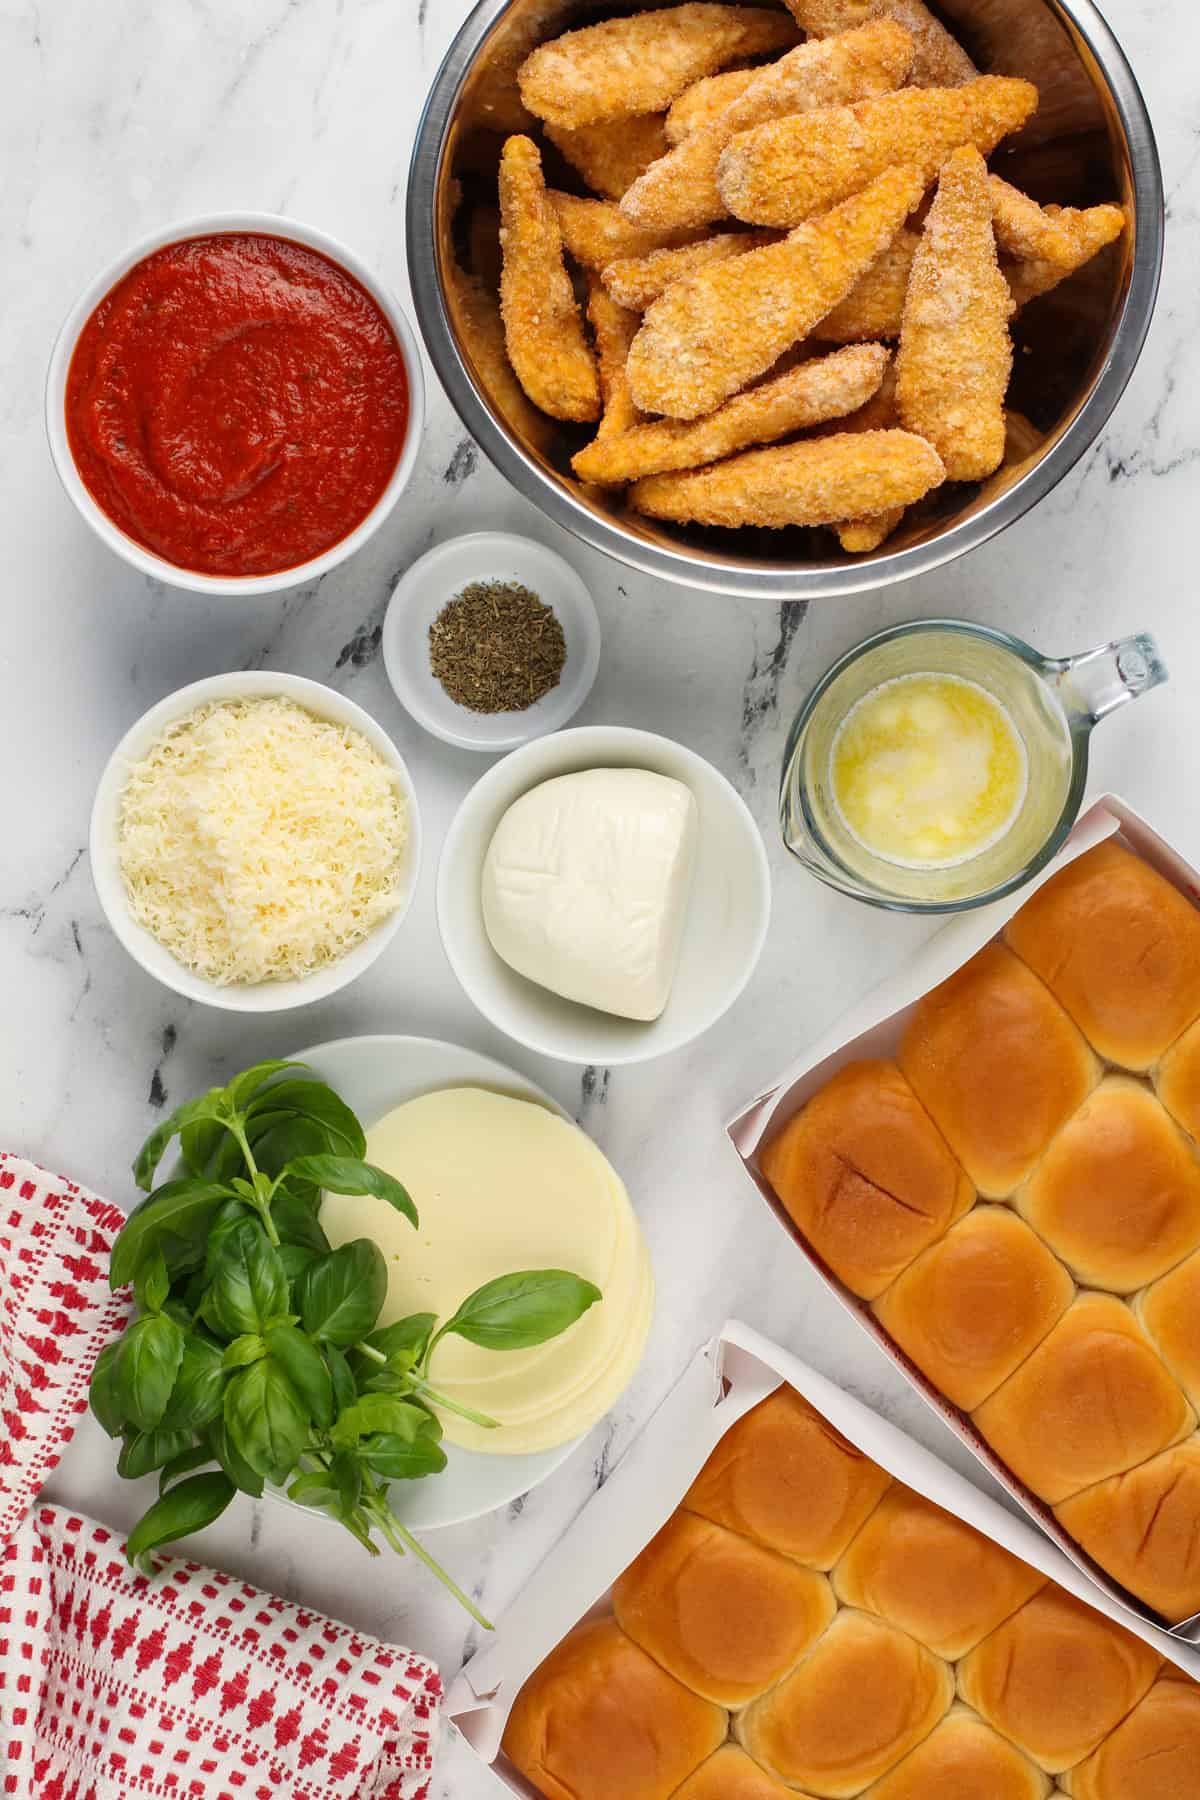 Chicken parmesan slider ingredients arranged on a white countertop.